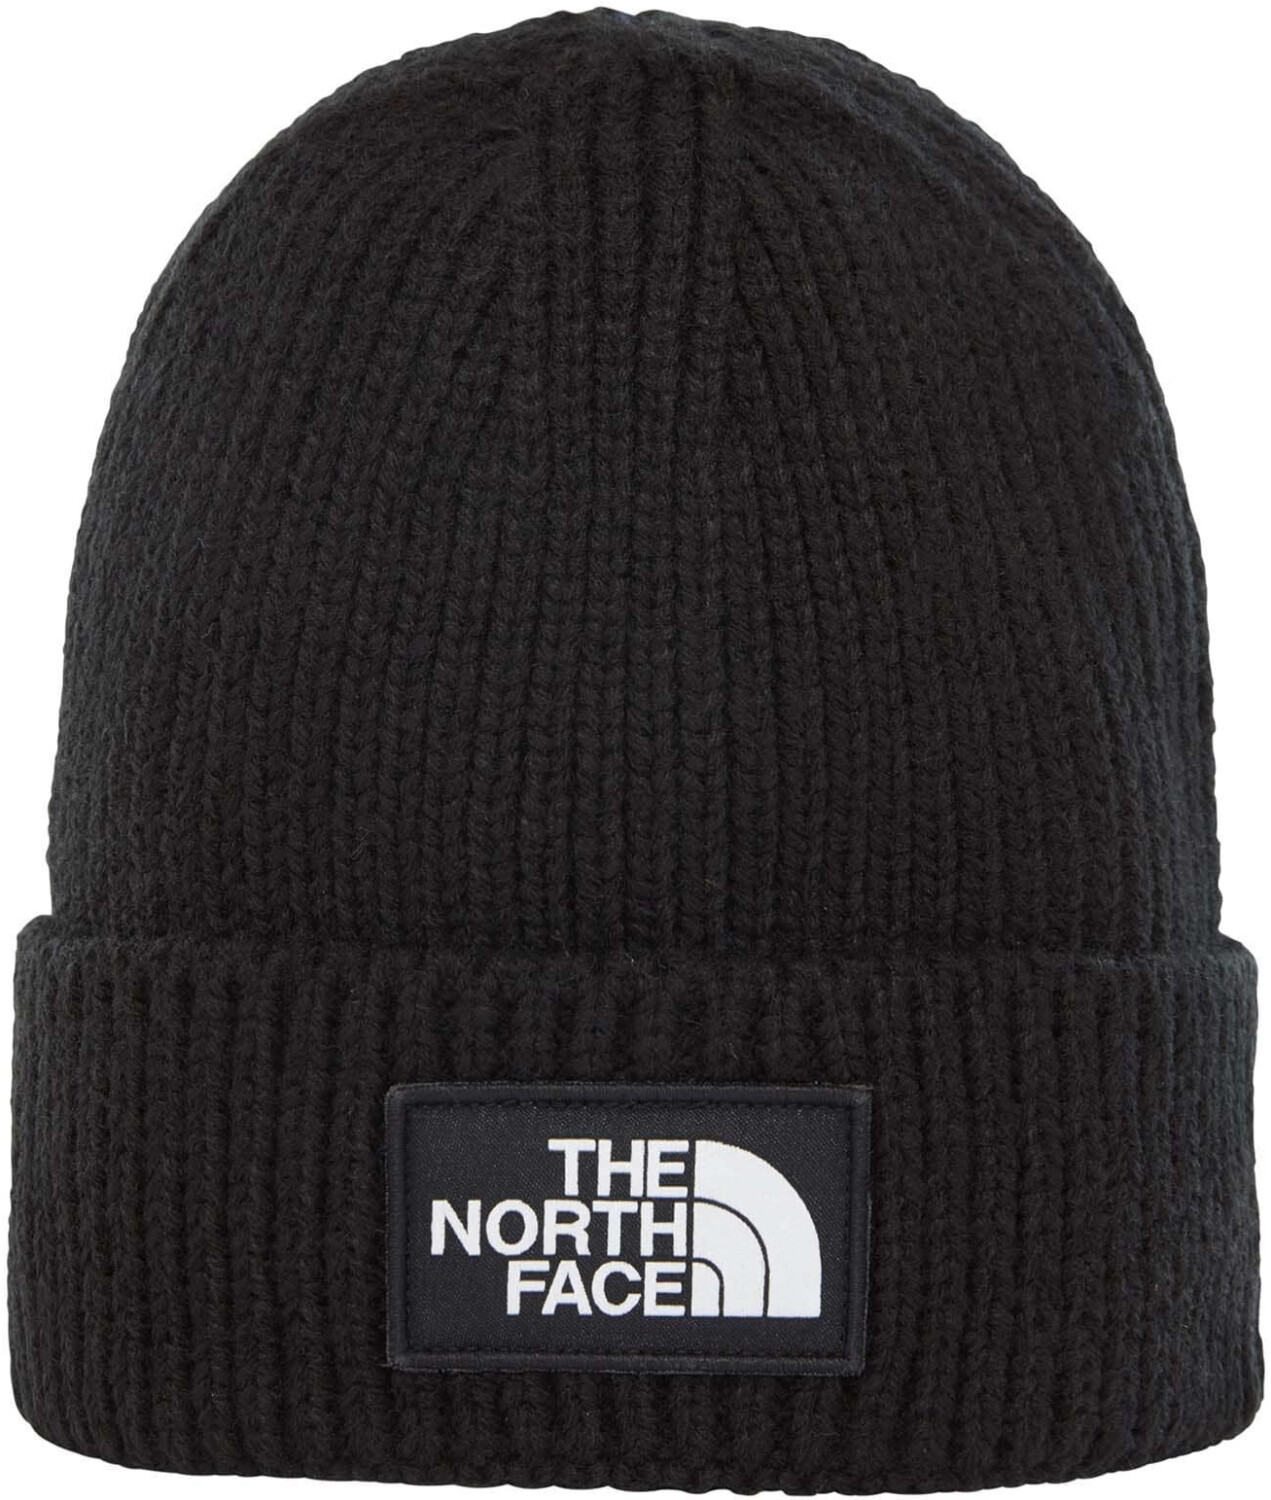 The North Face Logo Box Cuff Beanie Tnf Black Ab € 27 99 Preisvergleich Bei Idealo At